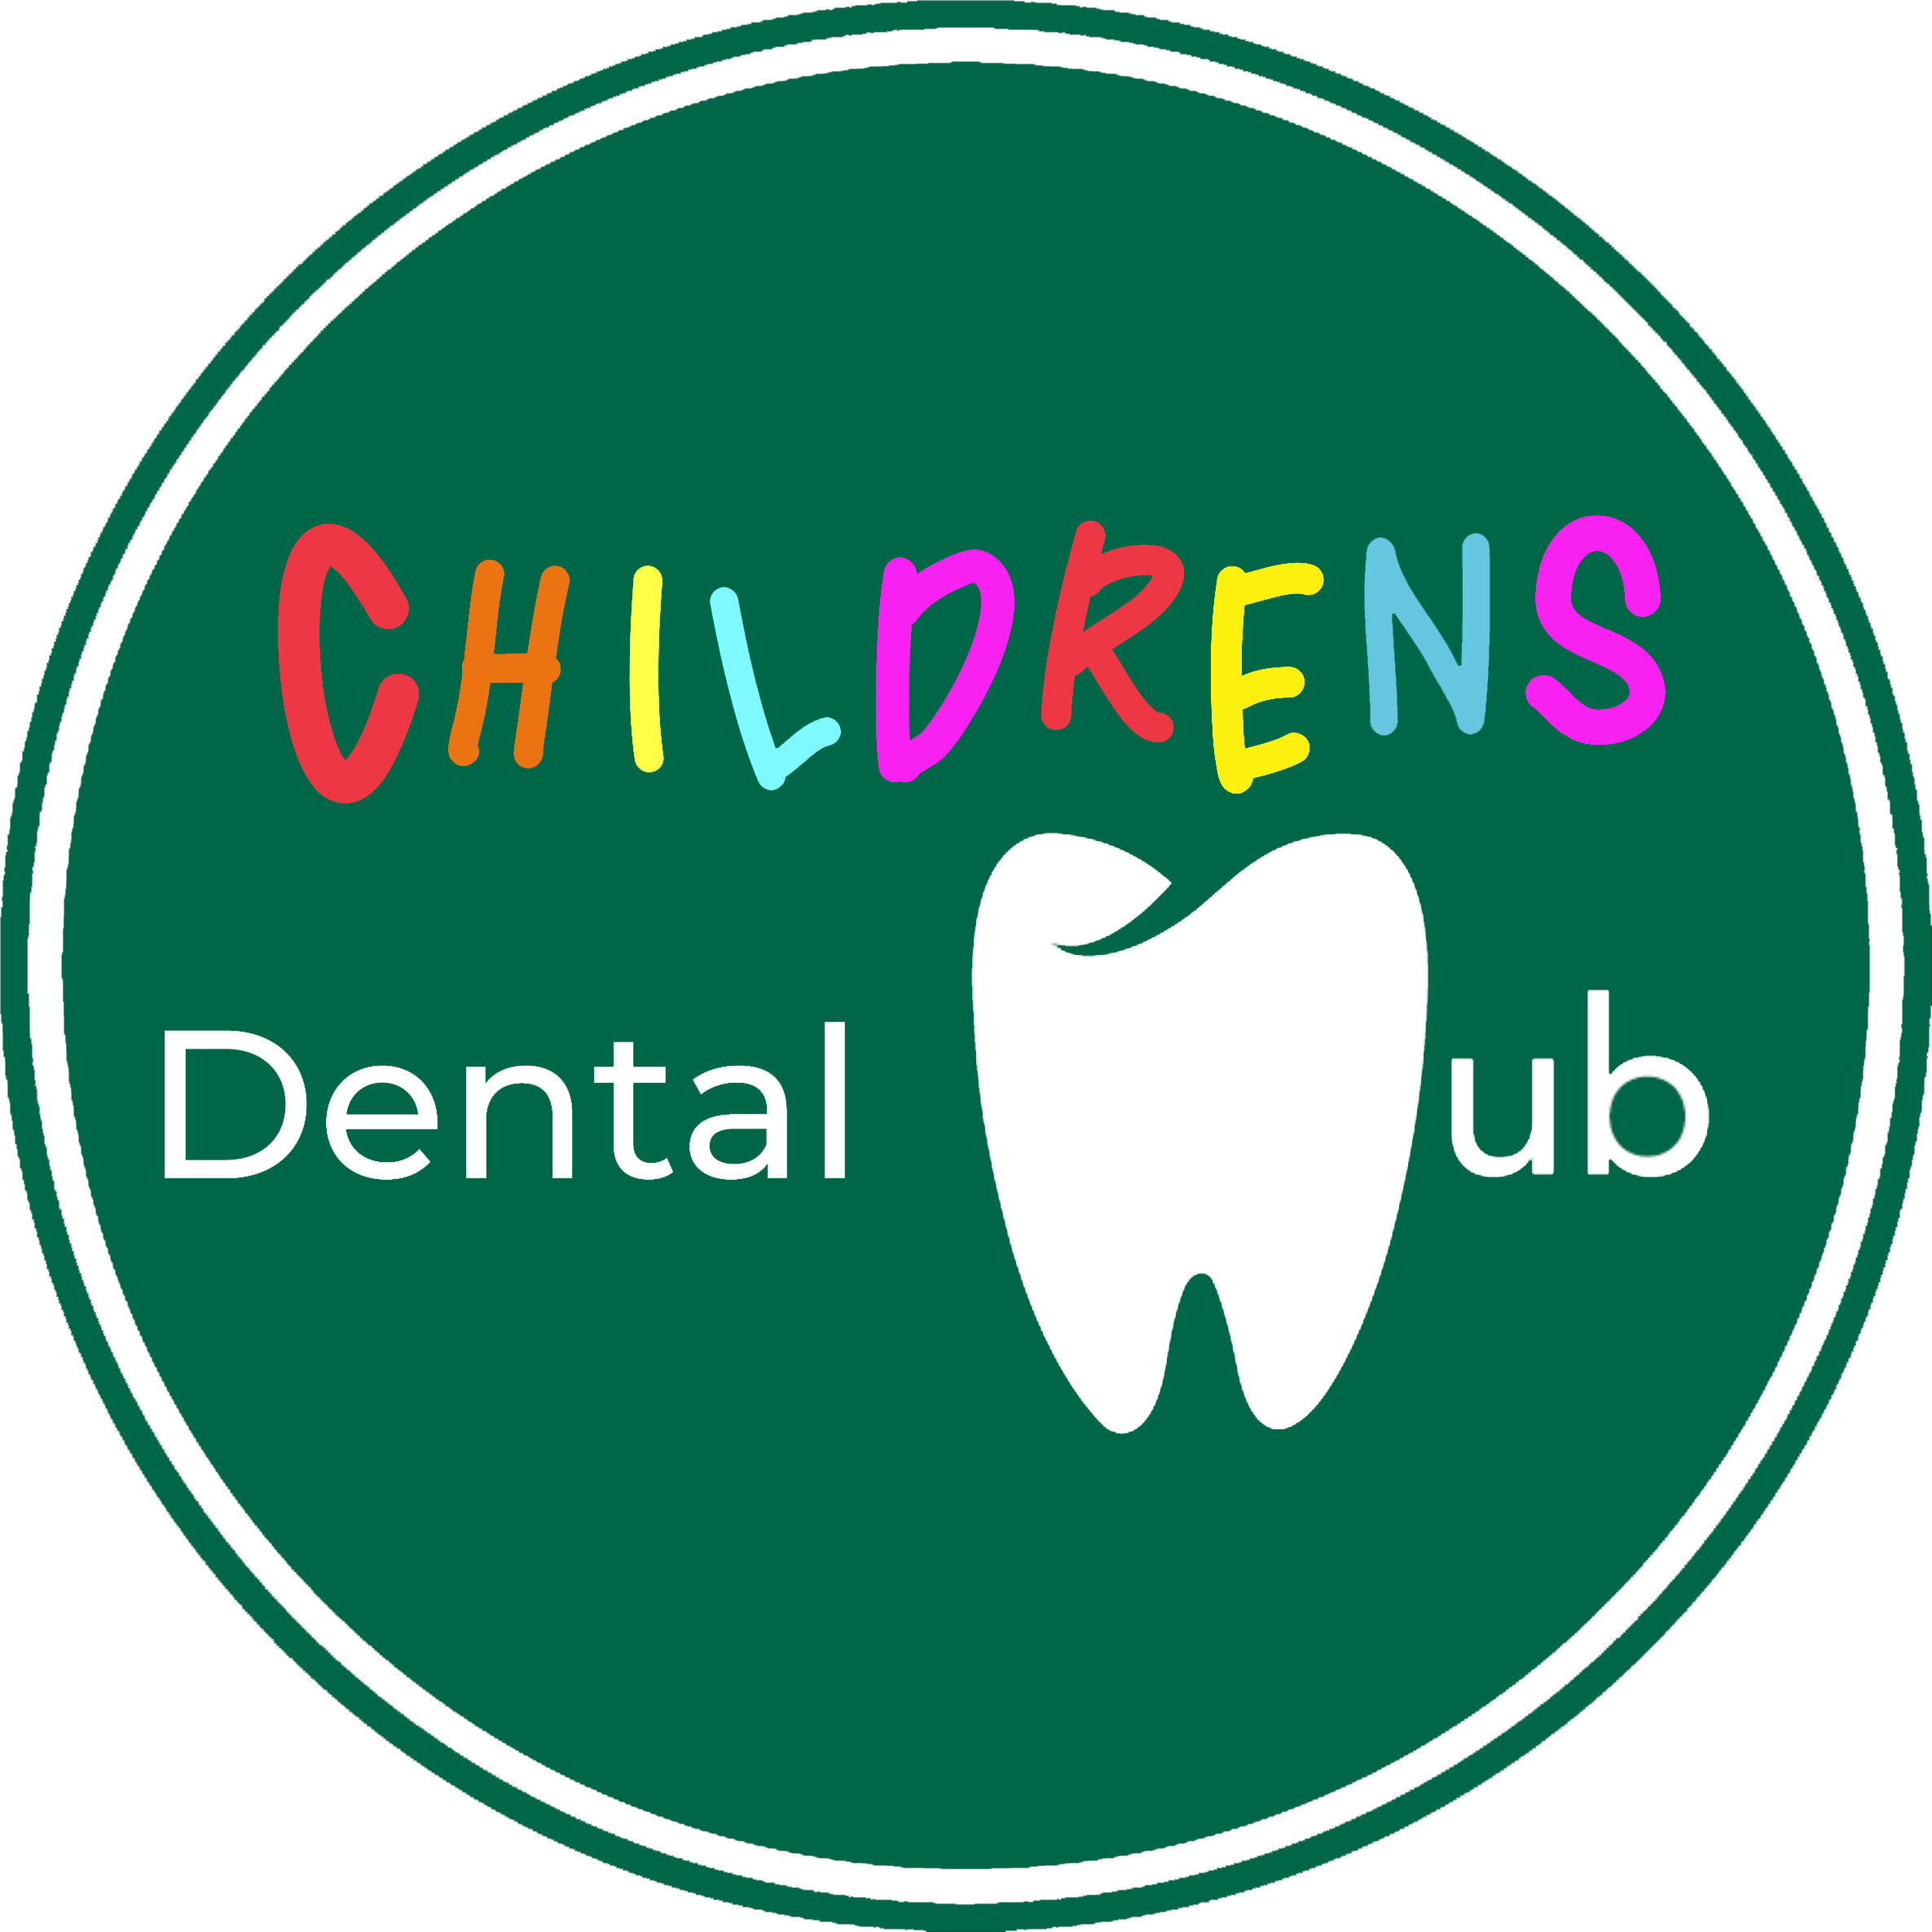 Childrens Dentist Dublin - Childrens Dental Clinic